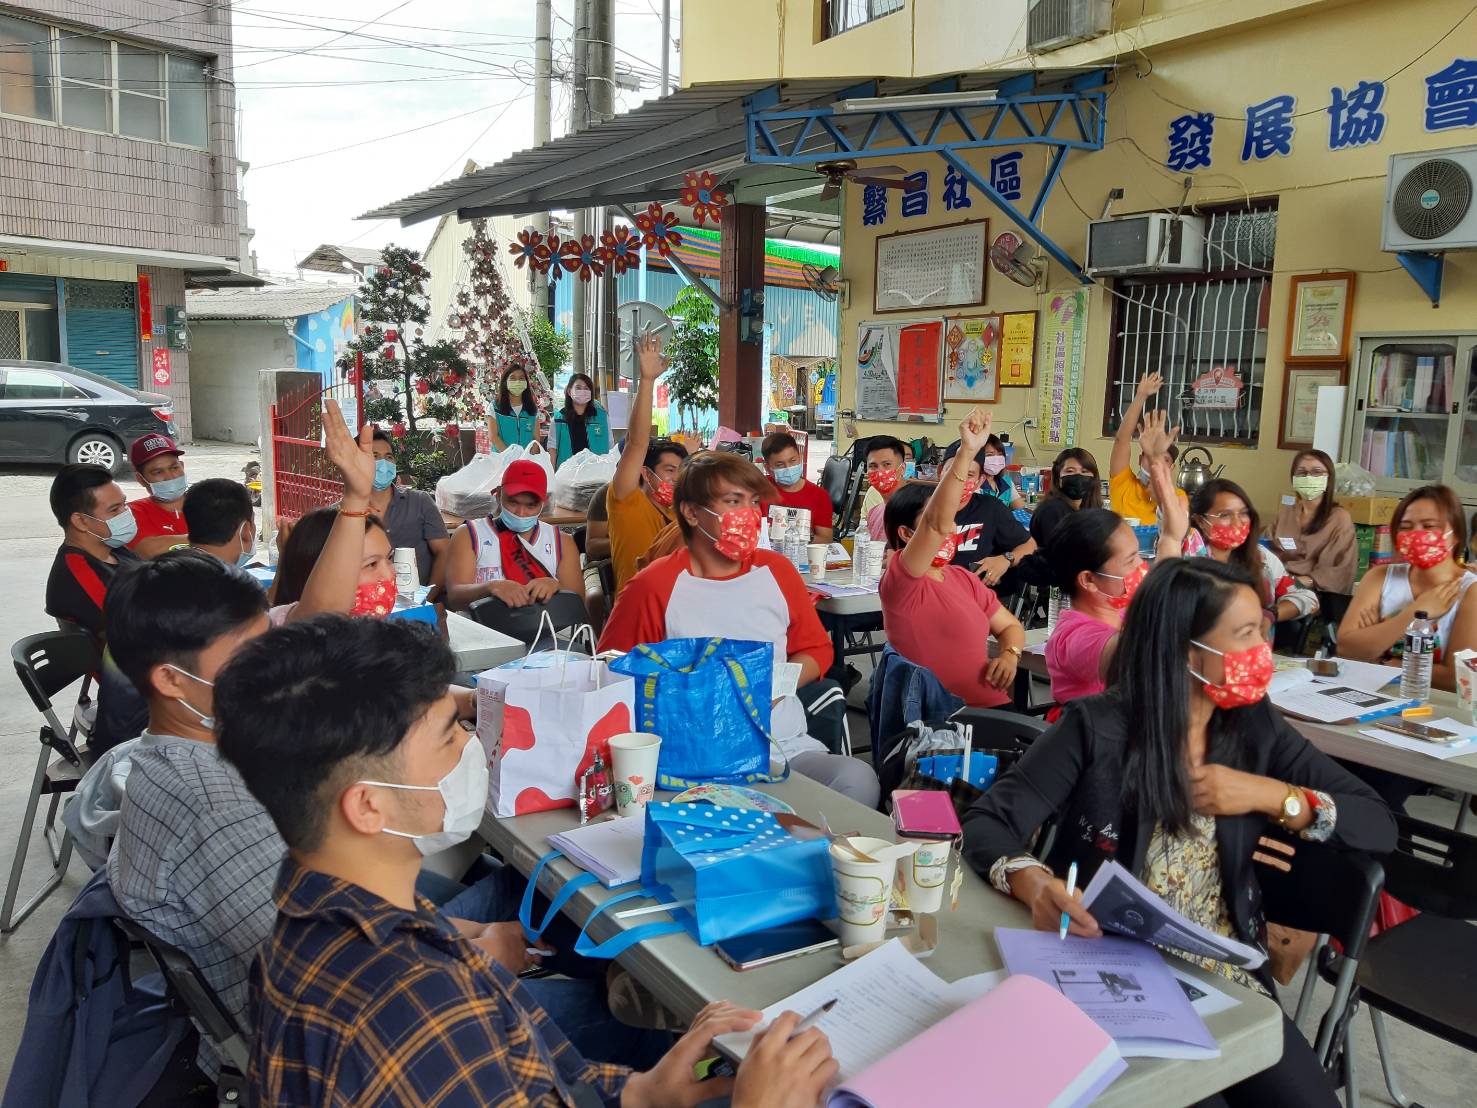 Pemerintah Kabupaten Pingtung secara teratur mengumumkan keputusan tentang migrasi. Sumber: Diambil dari pemerintah Kabupaten Pingtung